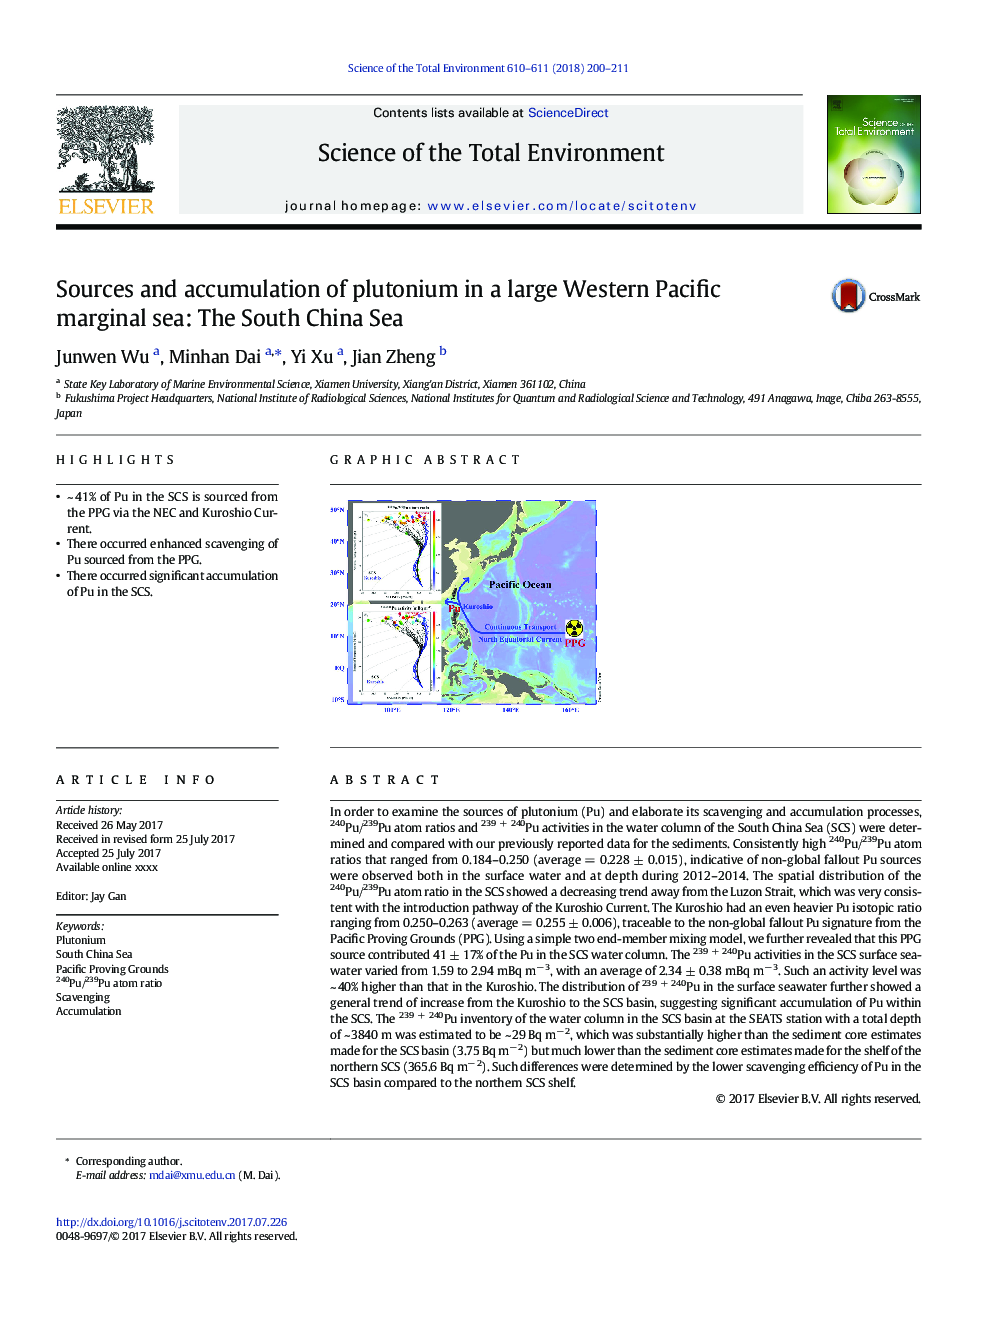 منابع و انباشت پلوتونیوم در یک دریای حاشیه ای غربی اقیانوس آرام: دریای جنوبی چین